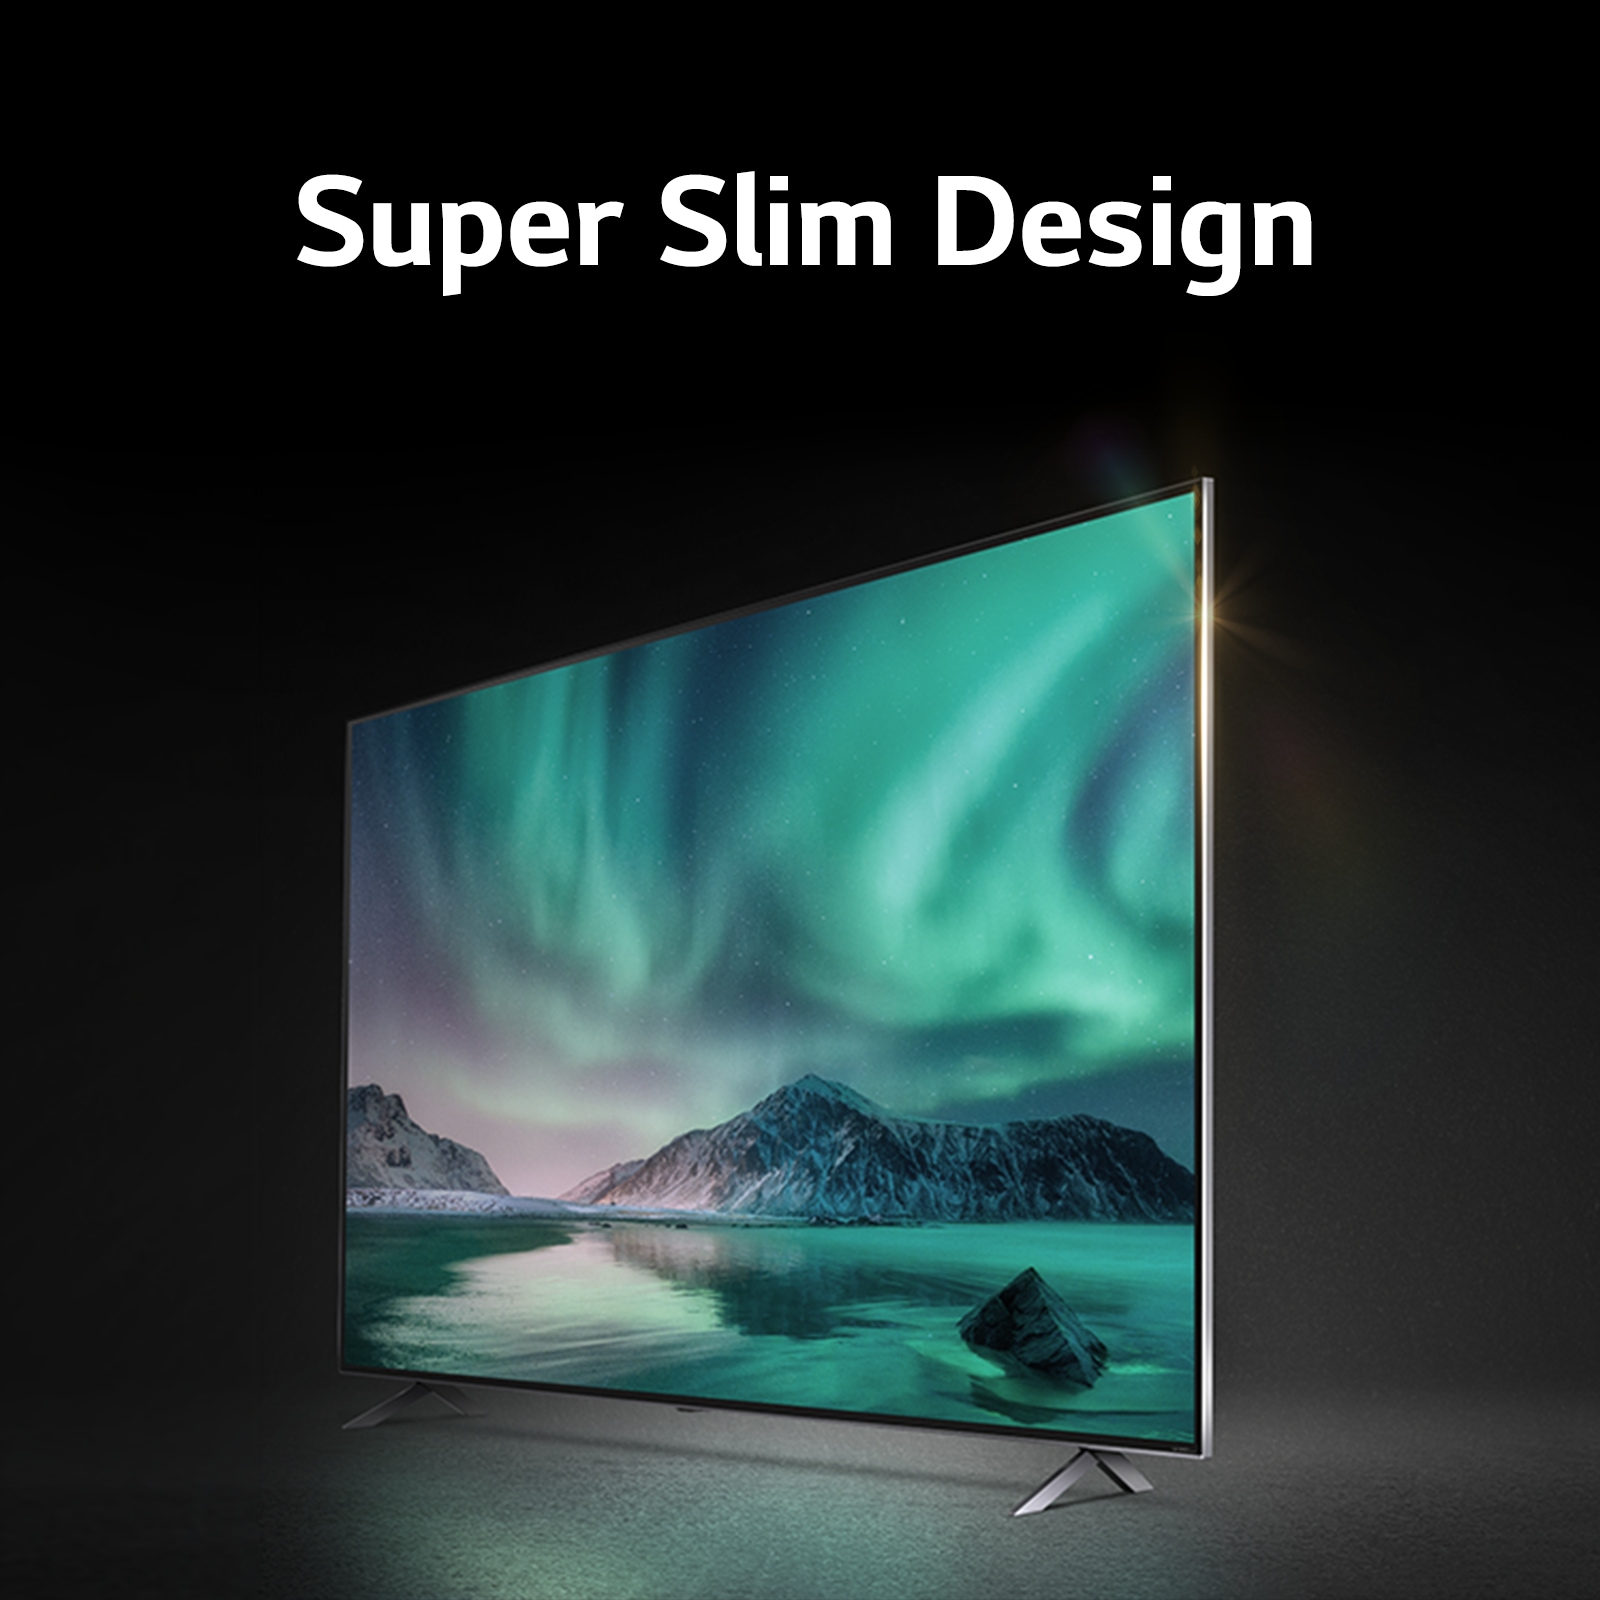 LG - TV - Super Slim Design